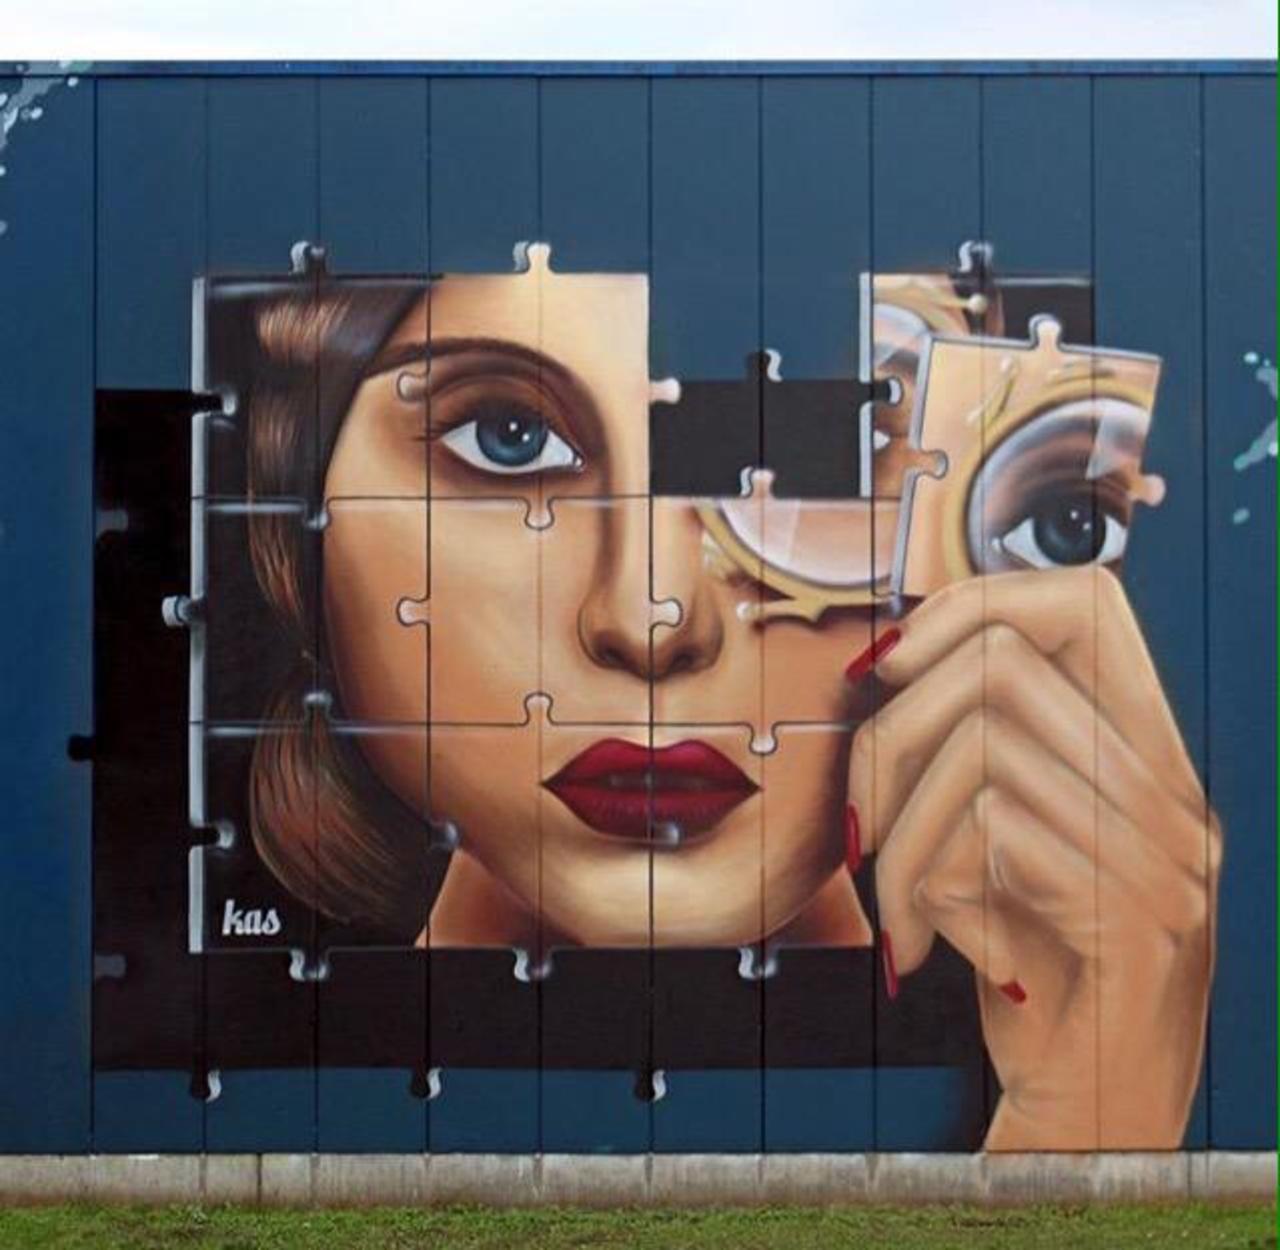 Kas Art's new Street Art "Piece of me" in Aalst Belgium 

#art #graffiti #mural #streetart http://t.co/AwKyF7QAnh